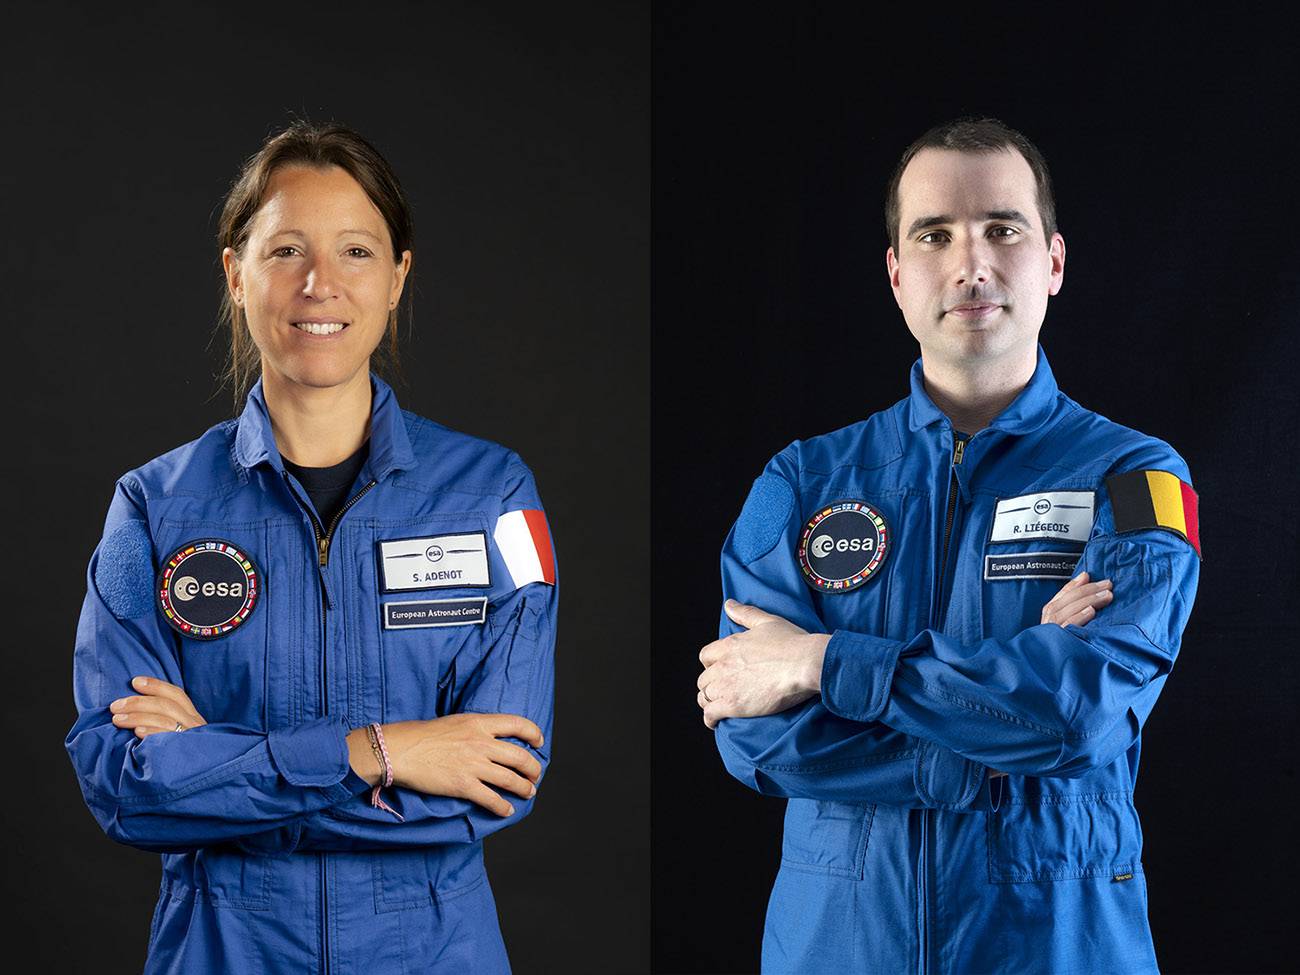 Los astronautas europeos Sophie Adenot y Raphaël Liégeois, primeros de su promoción en viajar al espacio